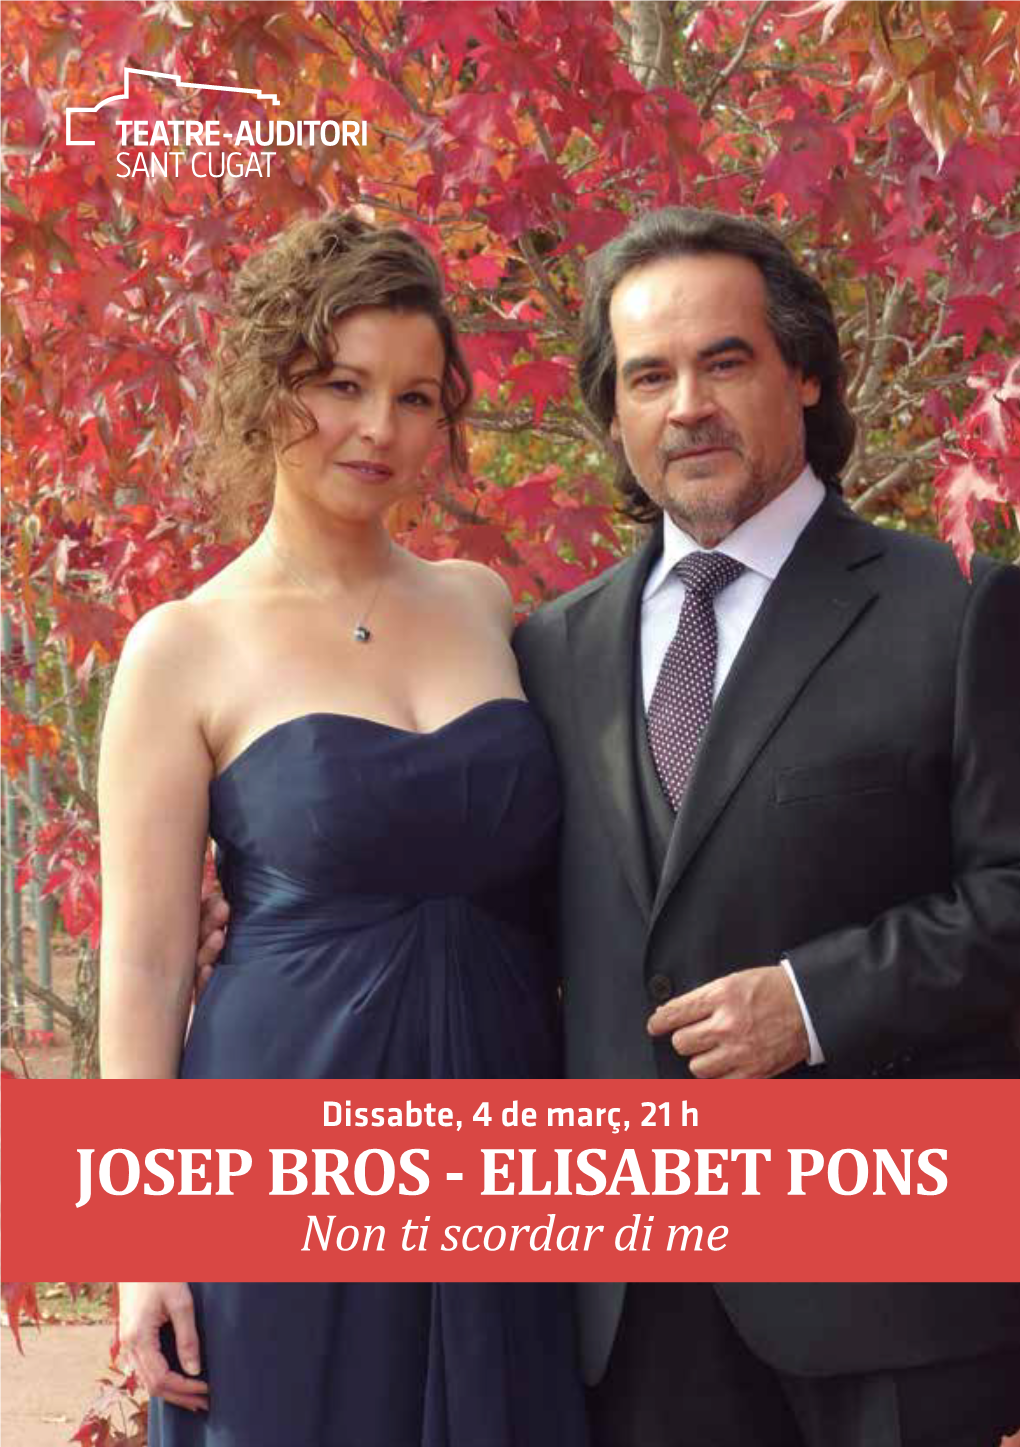 ELISABET PONS Non Ti Scordar Di Me PROGRAMA Josep Bros Elisabet Pons Marco Evangelisti Tenor Soprano Piano I Part